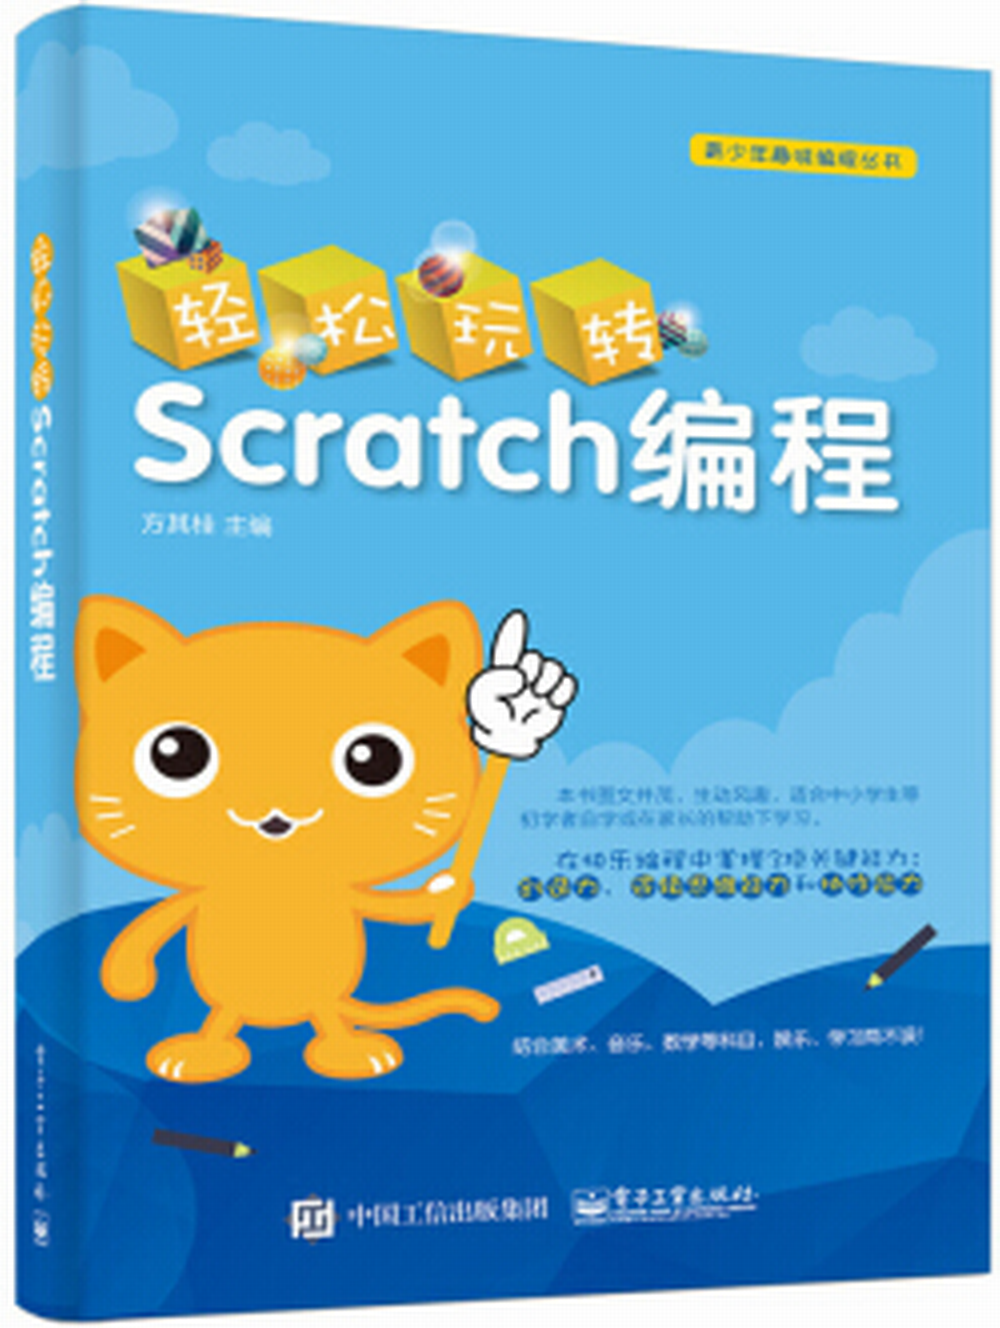 輕鬆玩轉Scratch編程